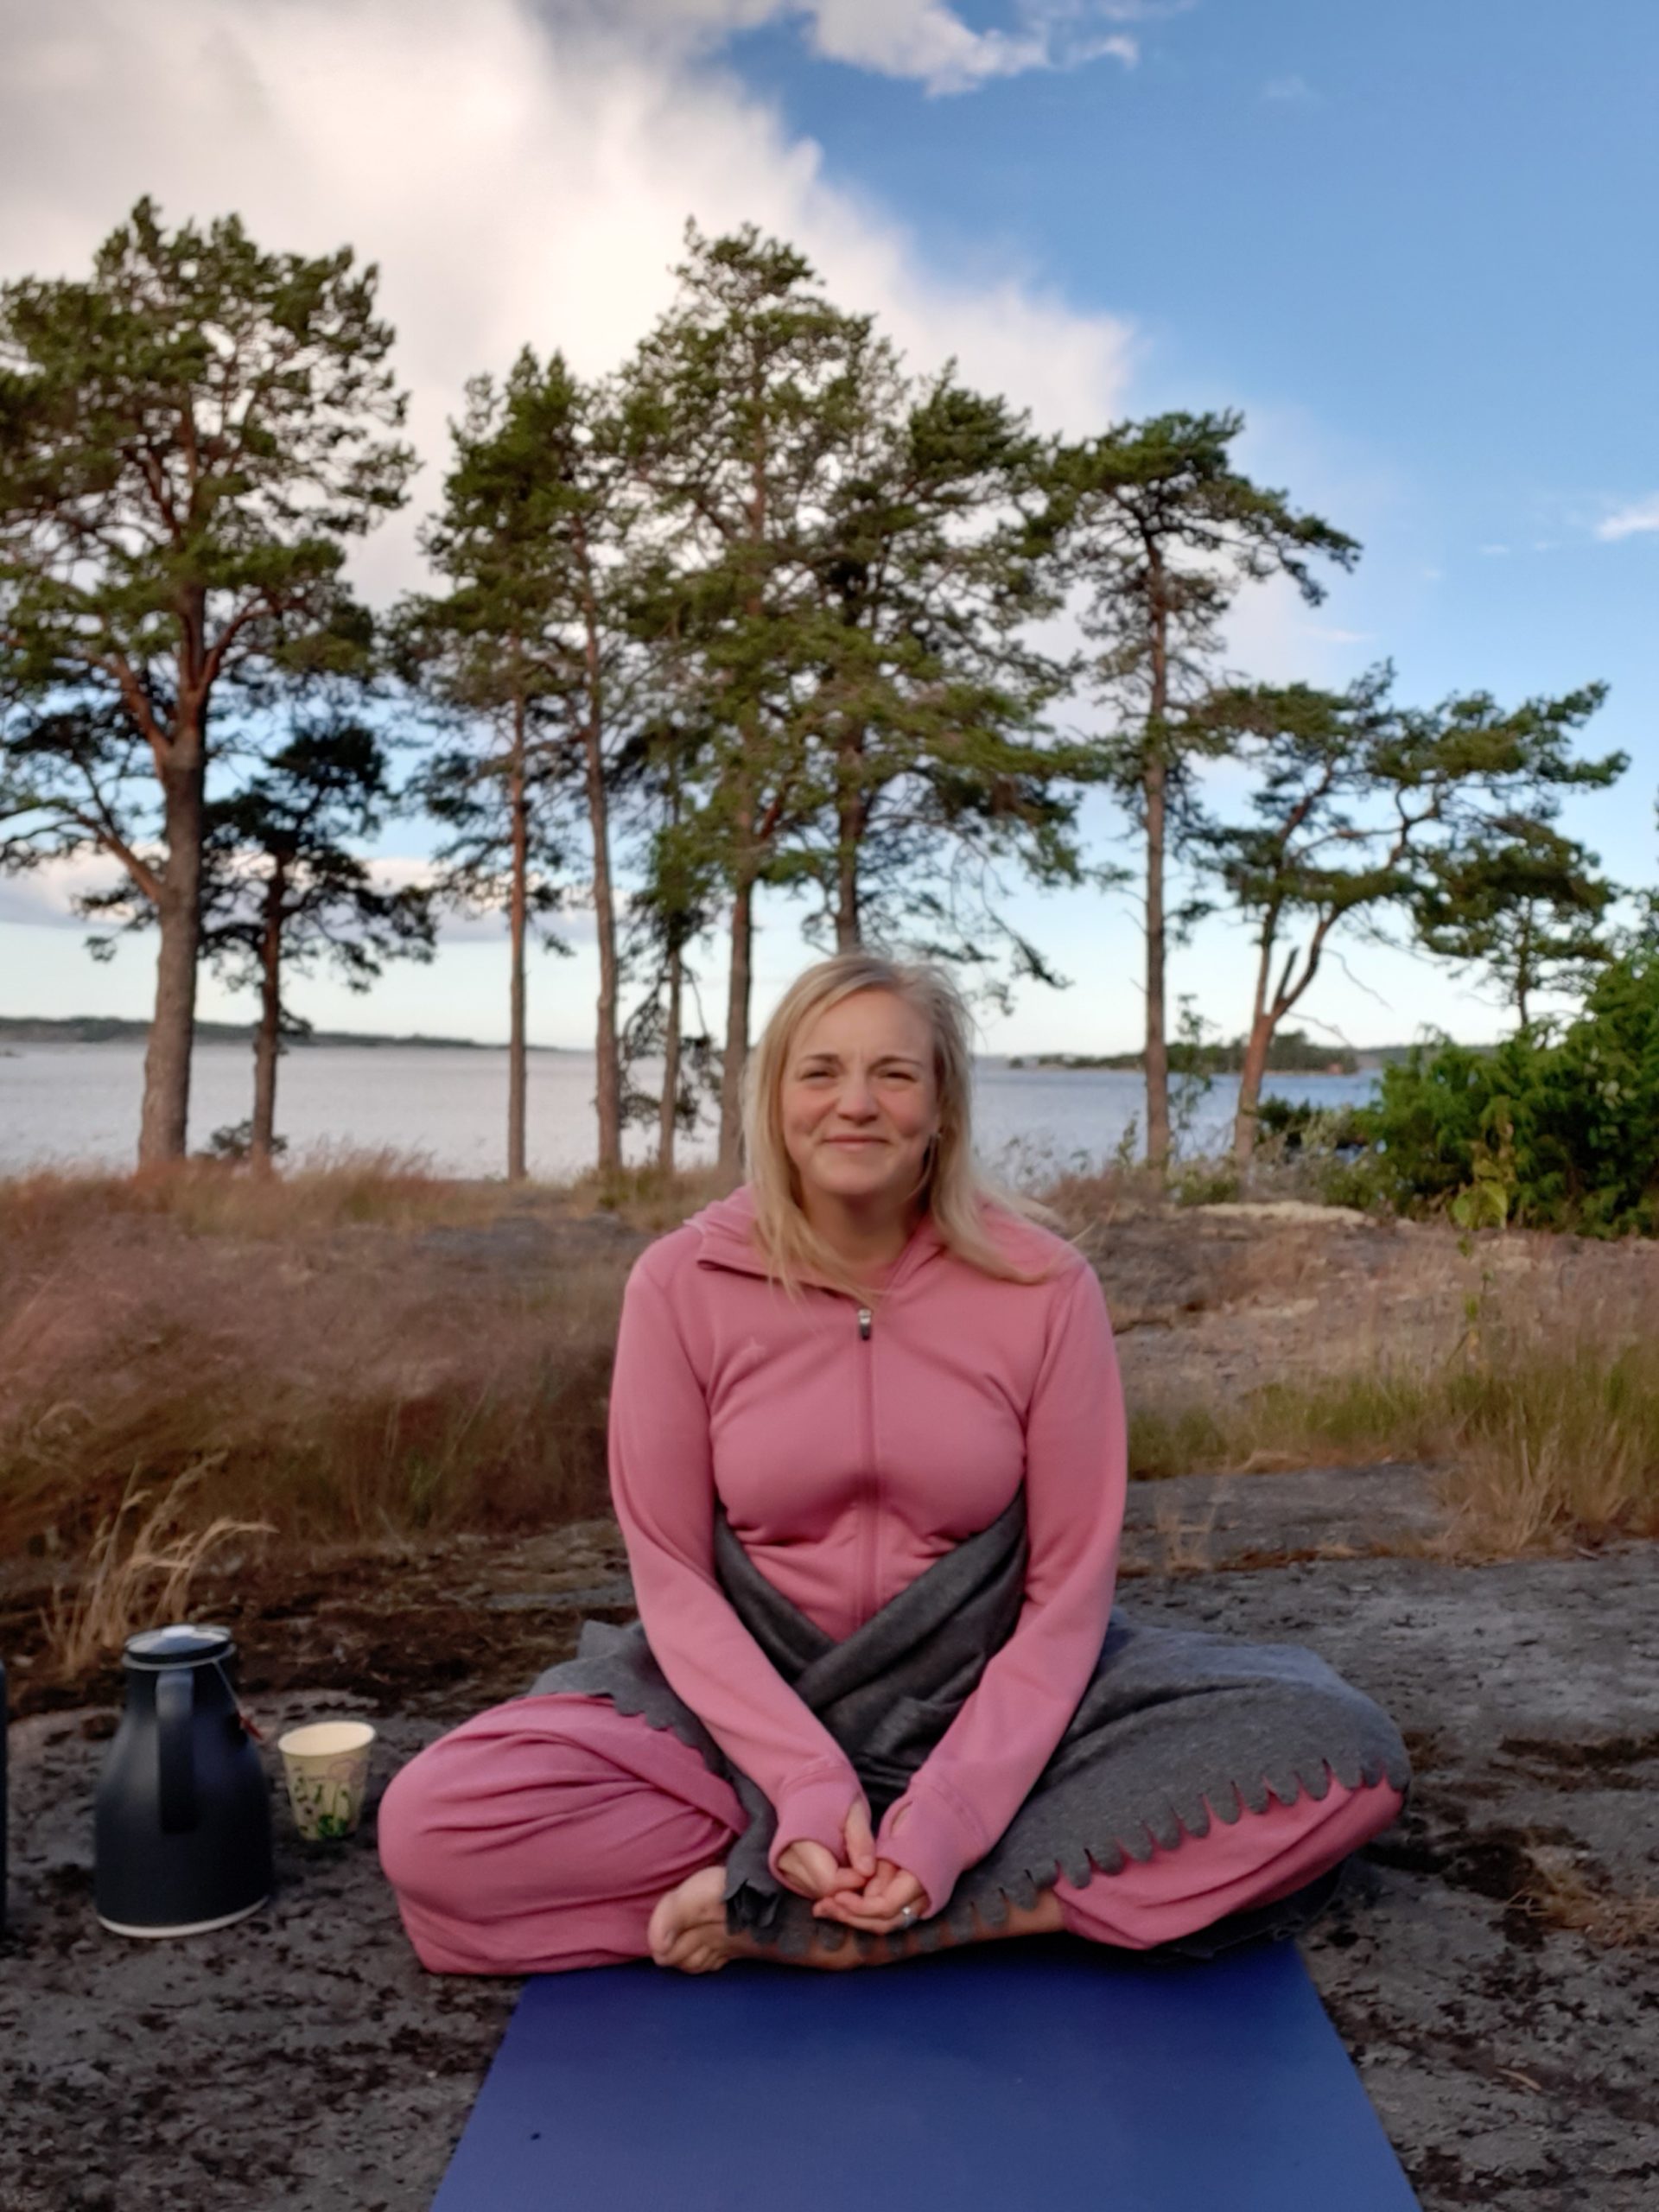 ÅRHUNDRADETS VIKTIGASTE KOMPETENS – Karin Wiregård